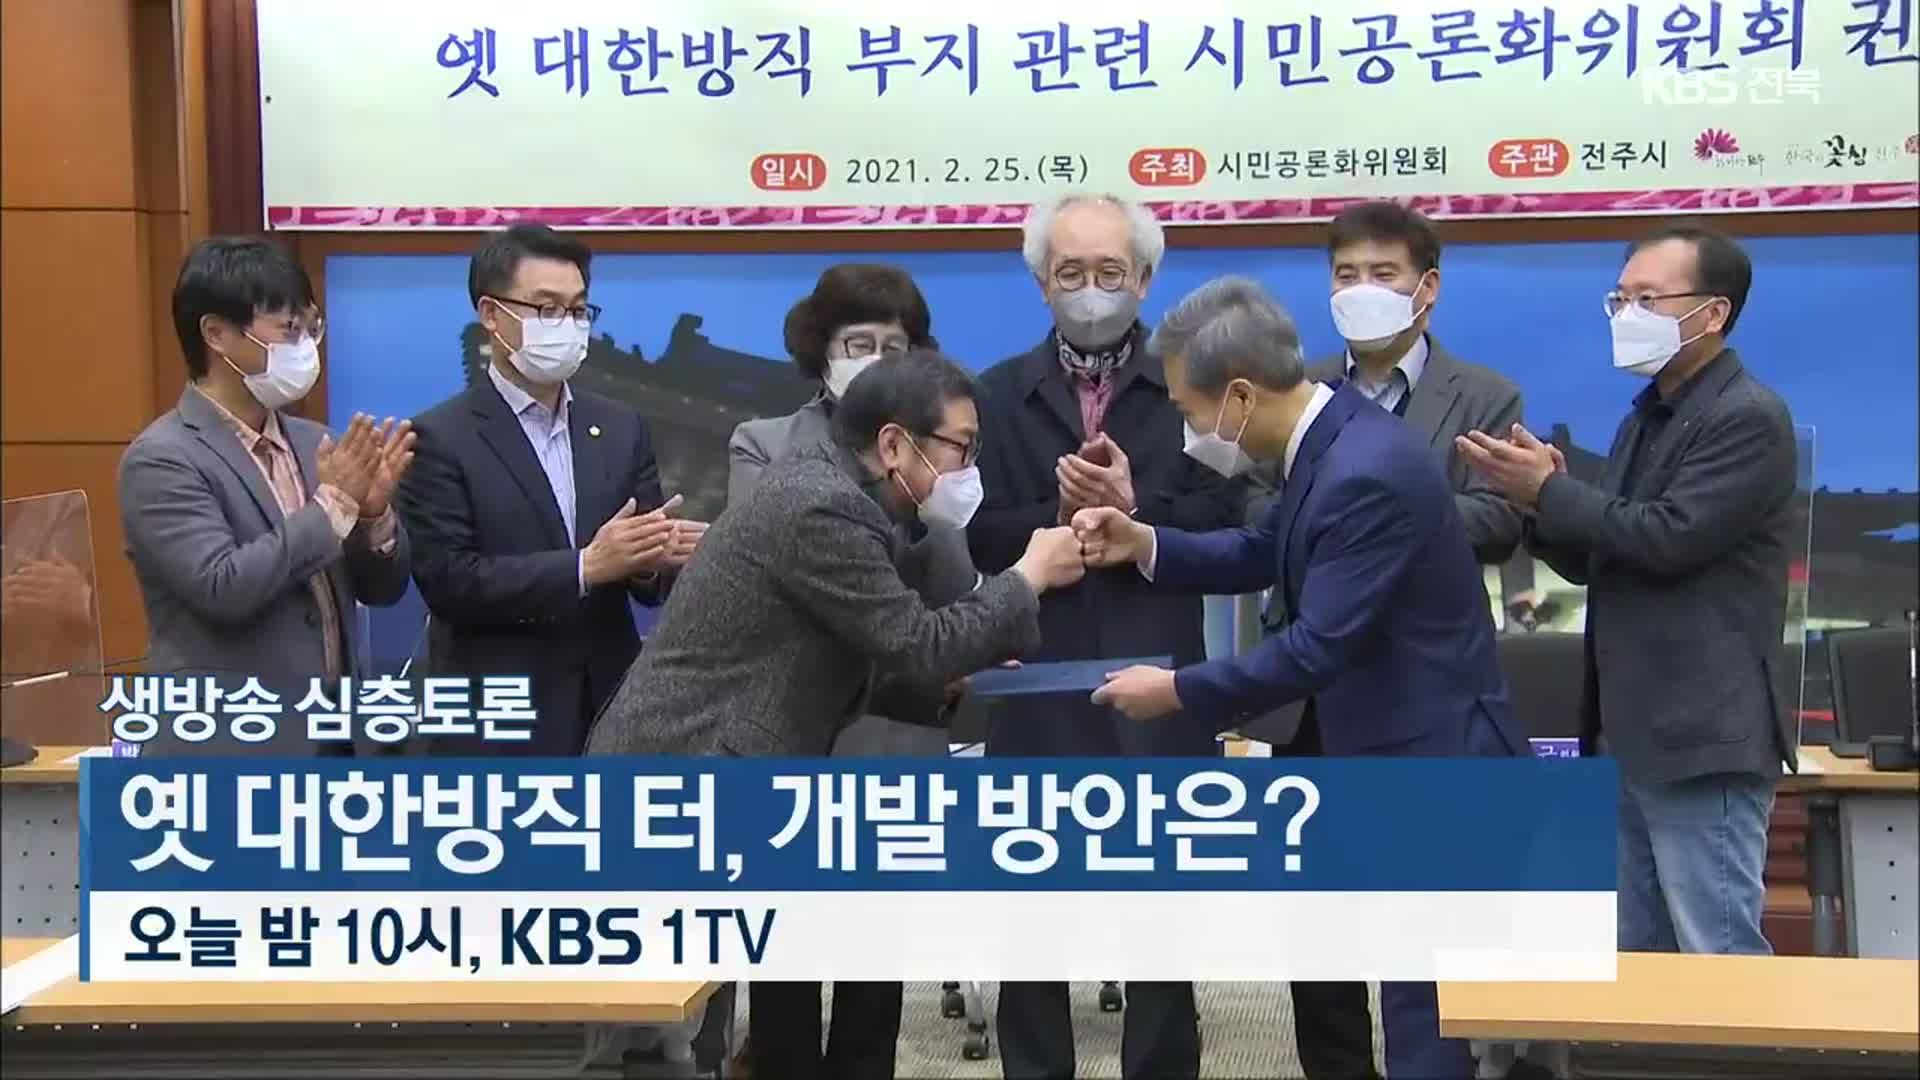 [생방송 심층토론] 옛 대한방직 터, 개발 방안은? 오늘 밤 10시 KBS 1TV